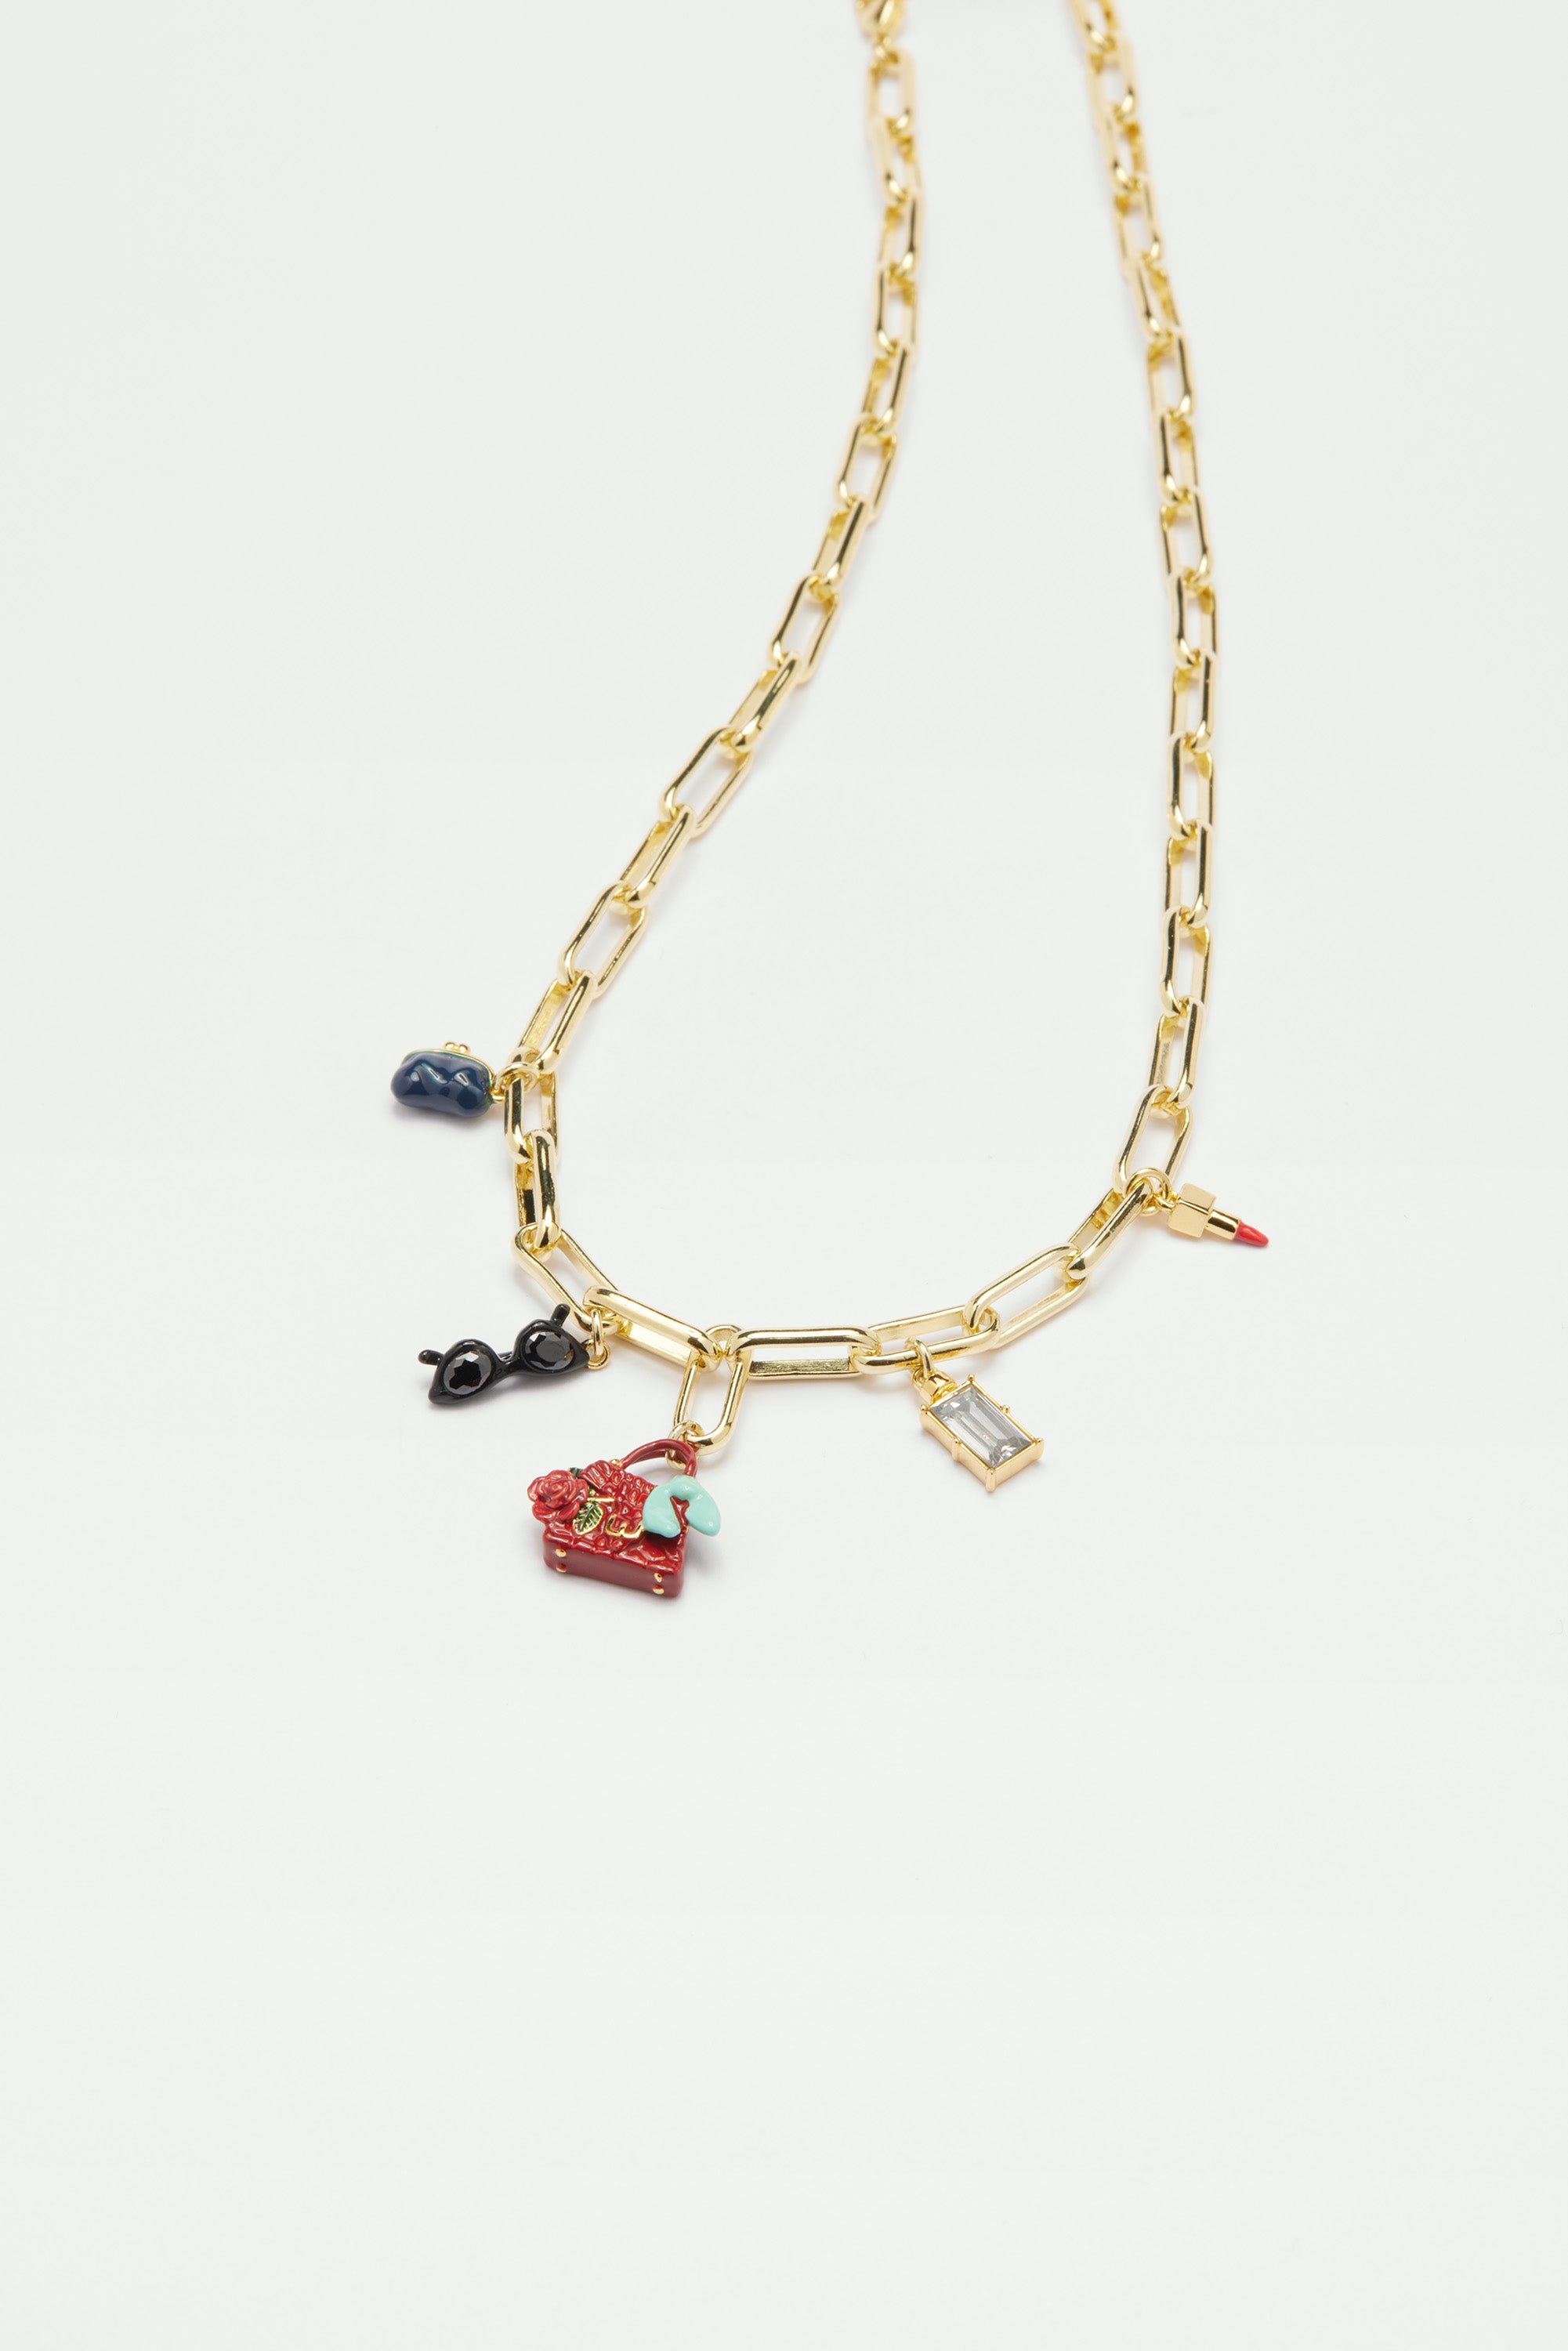 Paris souvenirs charm necklace